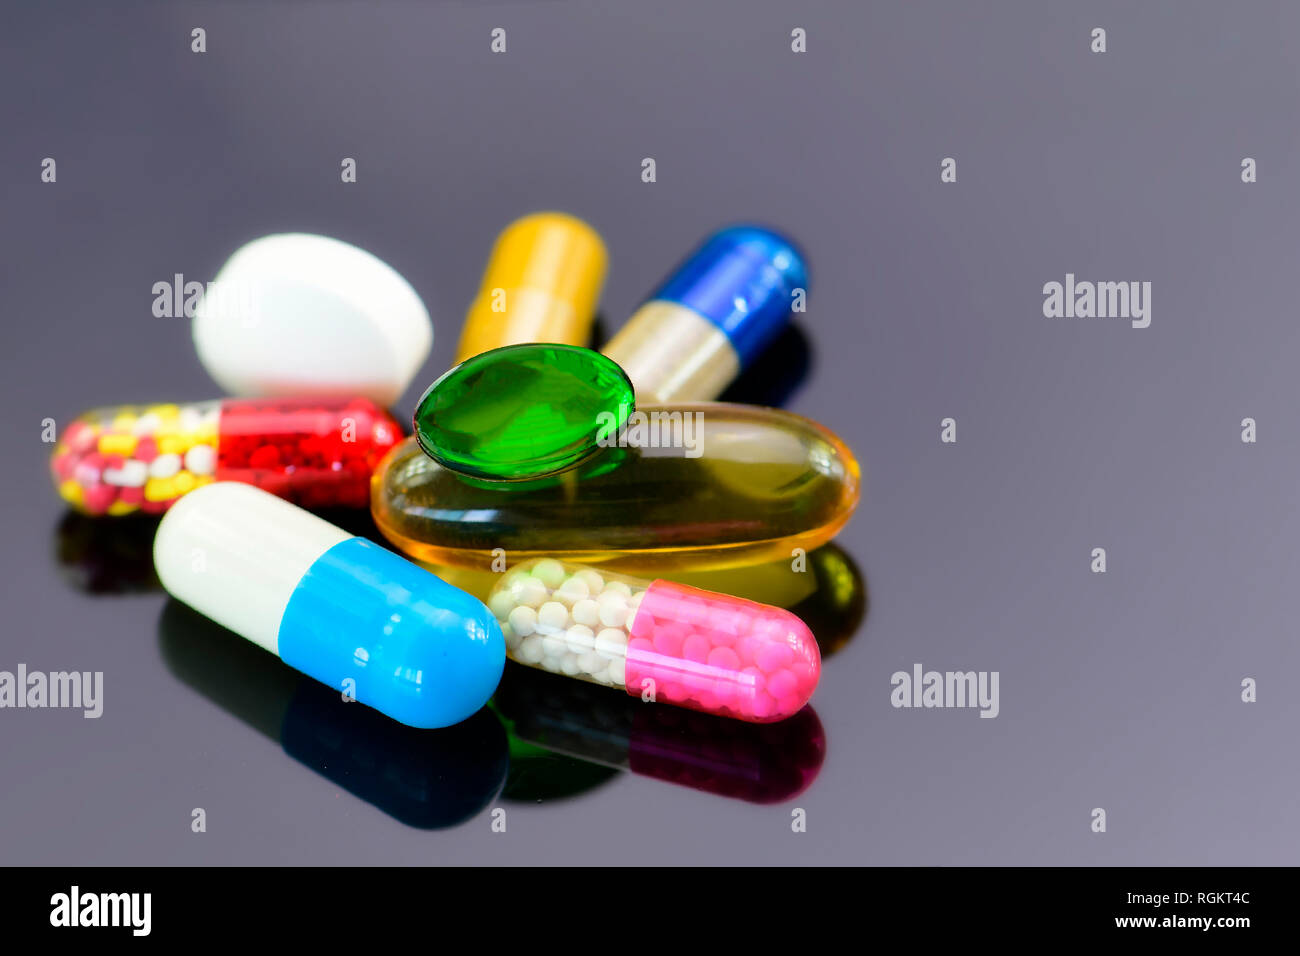 Colorato di medicazioni orali su sfondo scuro. Capsule e compresse per via orale sotto forma di dosaggio. Foto Stock